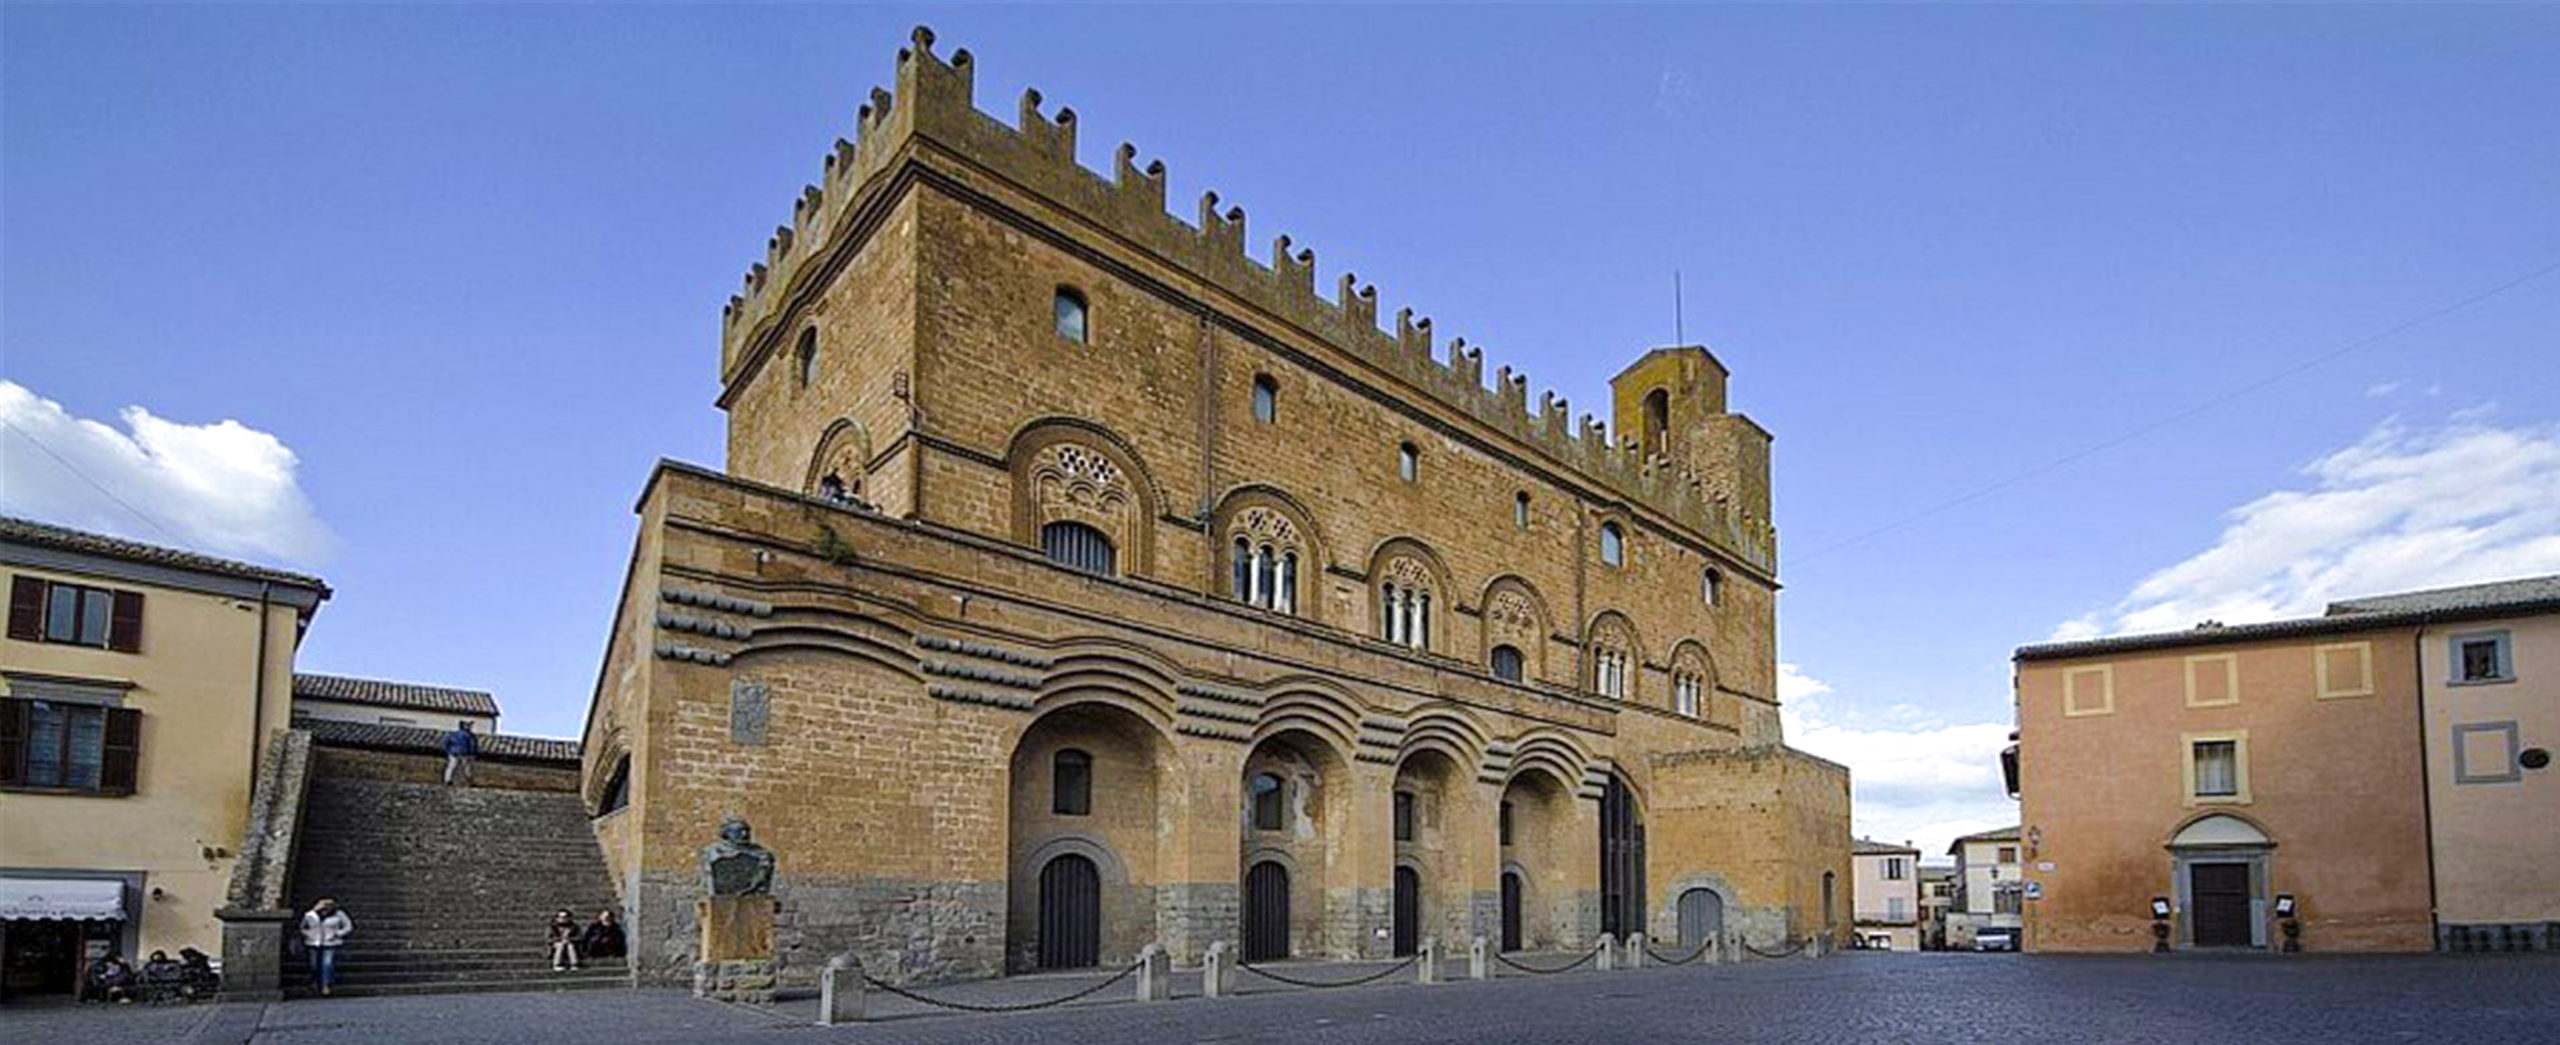 Orvieto - Il Palazzo del Capitano del Popolo